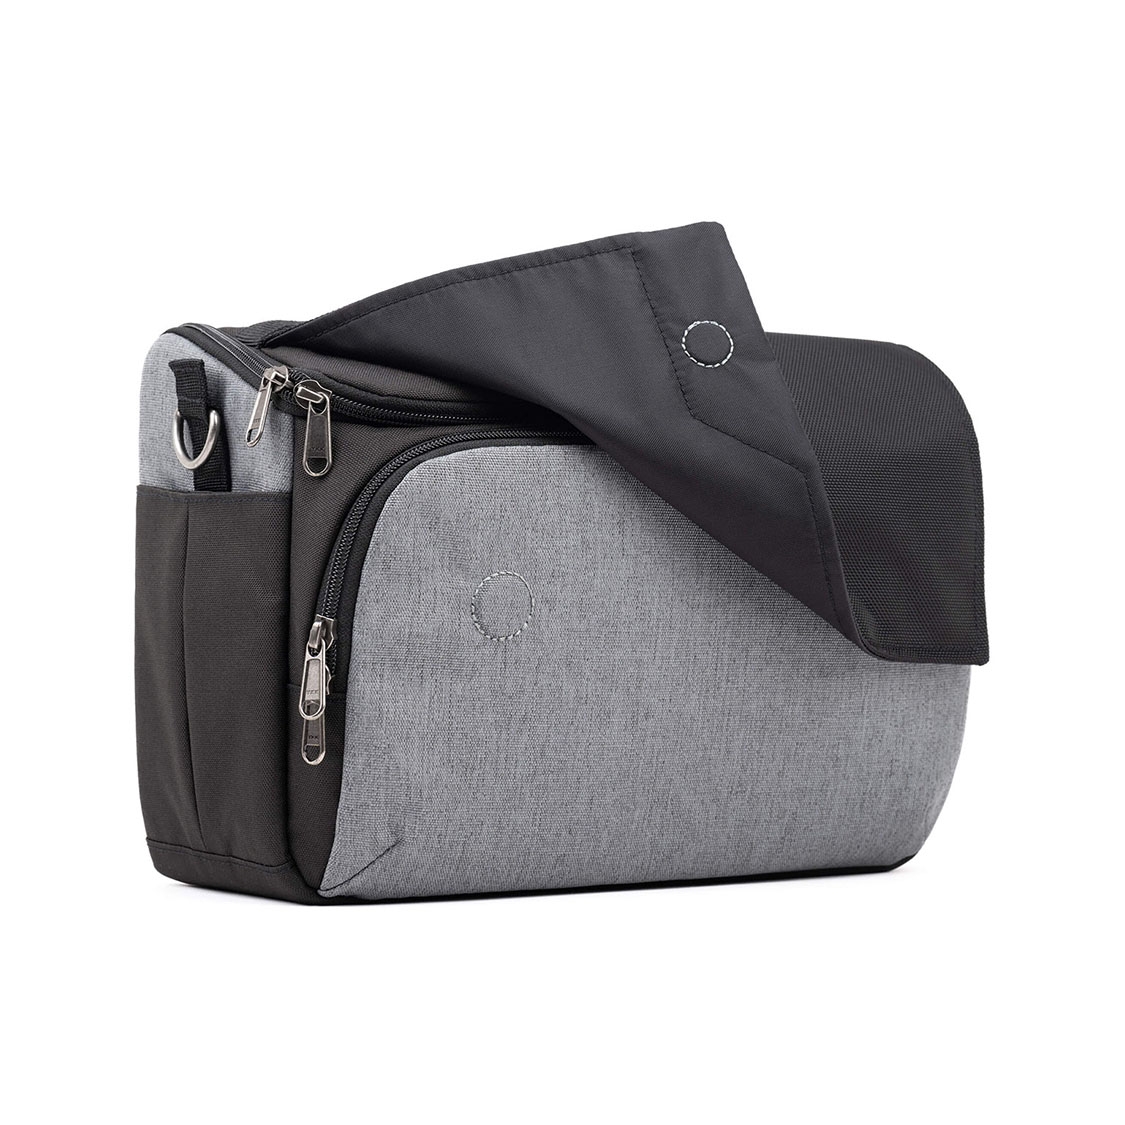 ThinkTank Mirrorless Mover 30 V2 Camera Bag (Cool Grey)